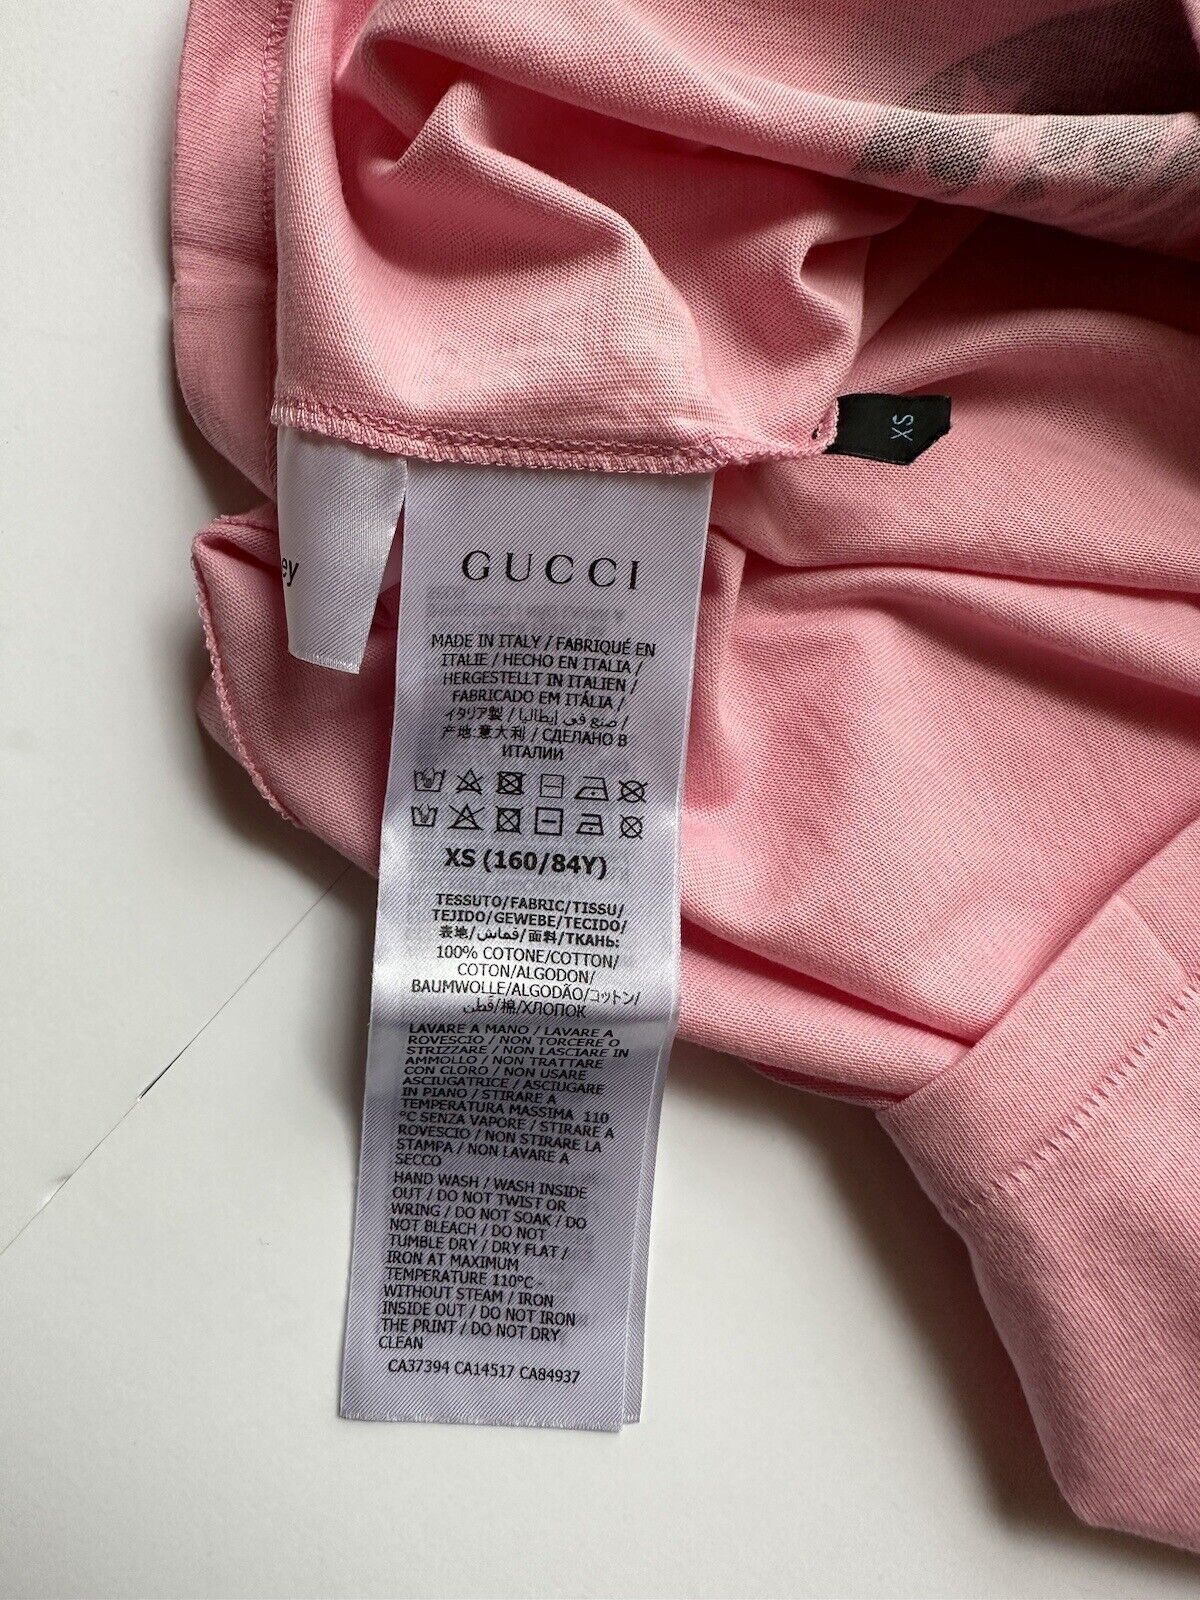 Розовая футболка NWT Gucci Donald Duck Jersey XS 644674 Сделано в Италии